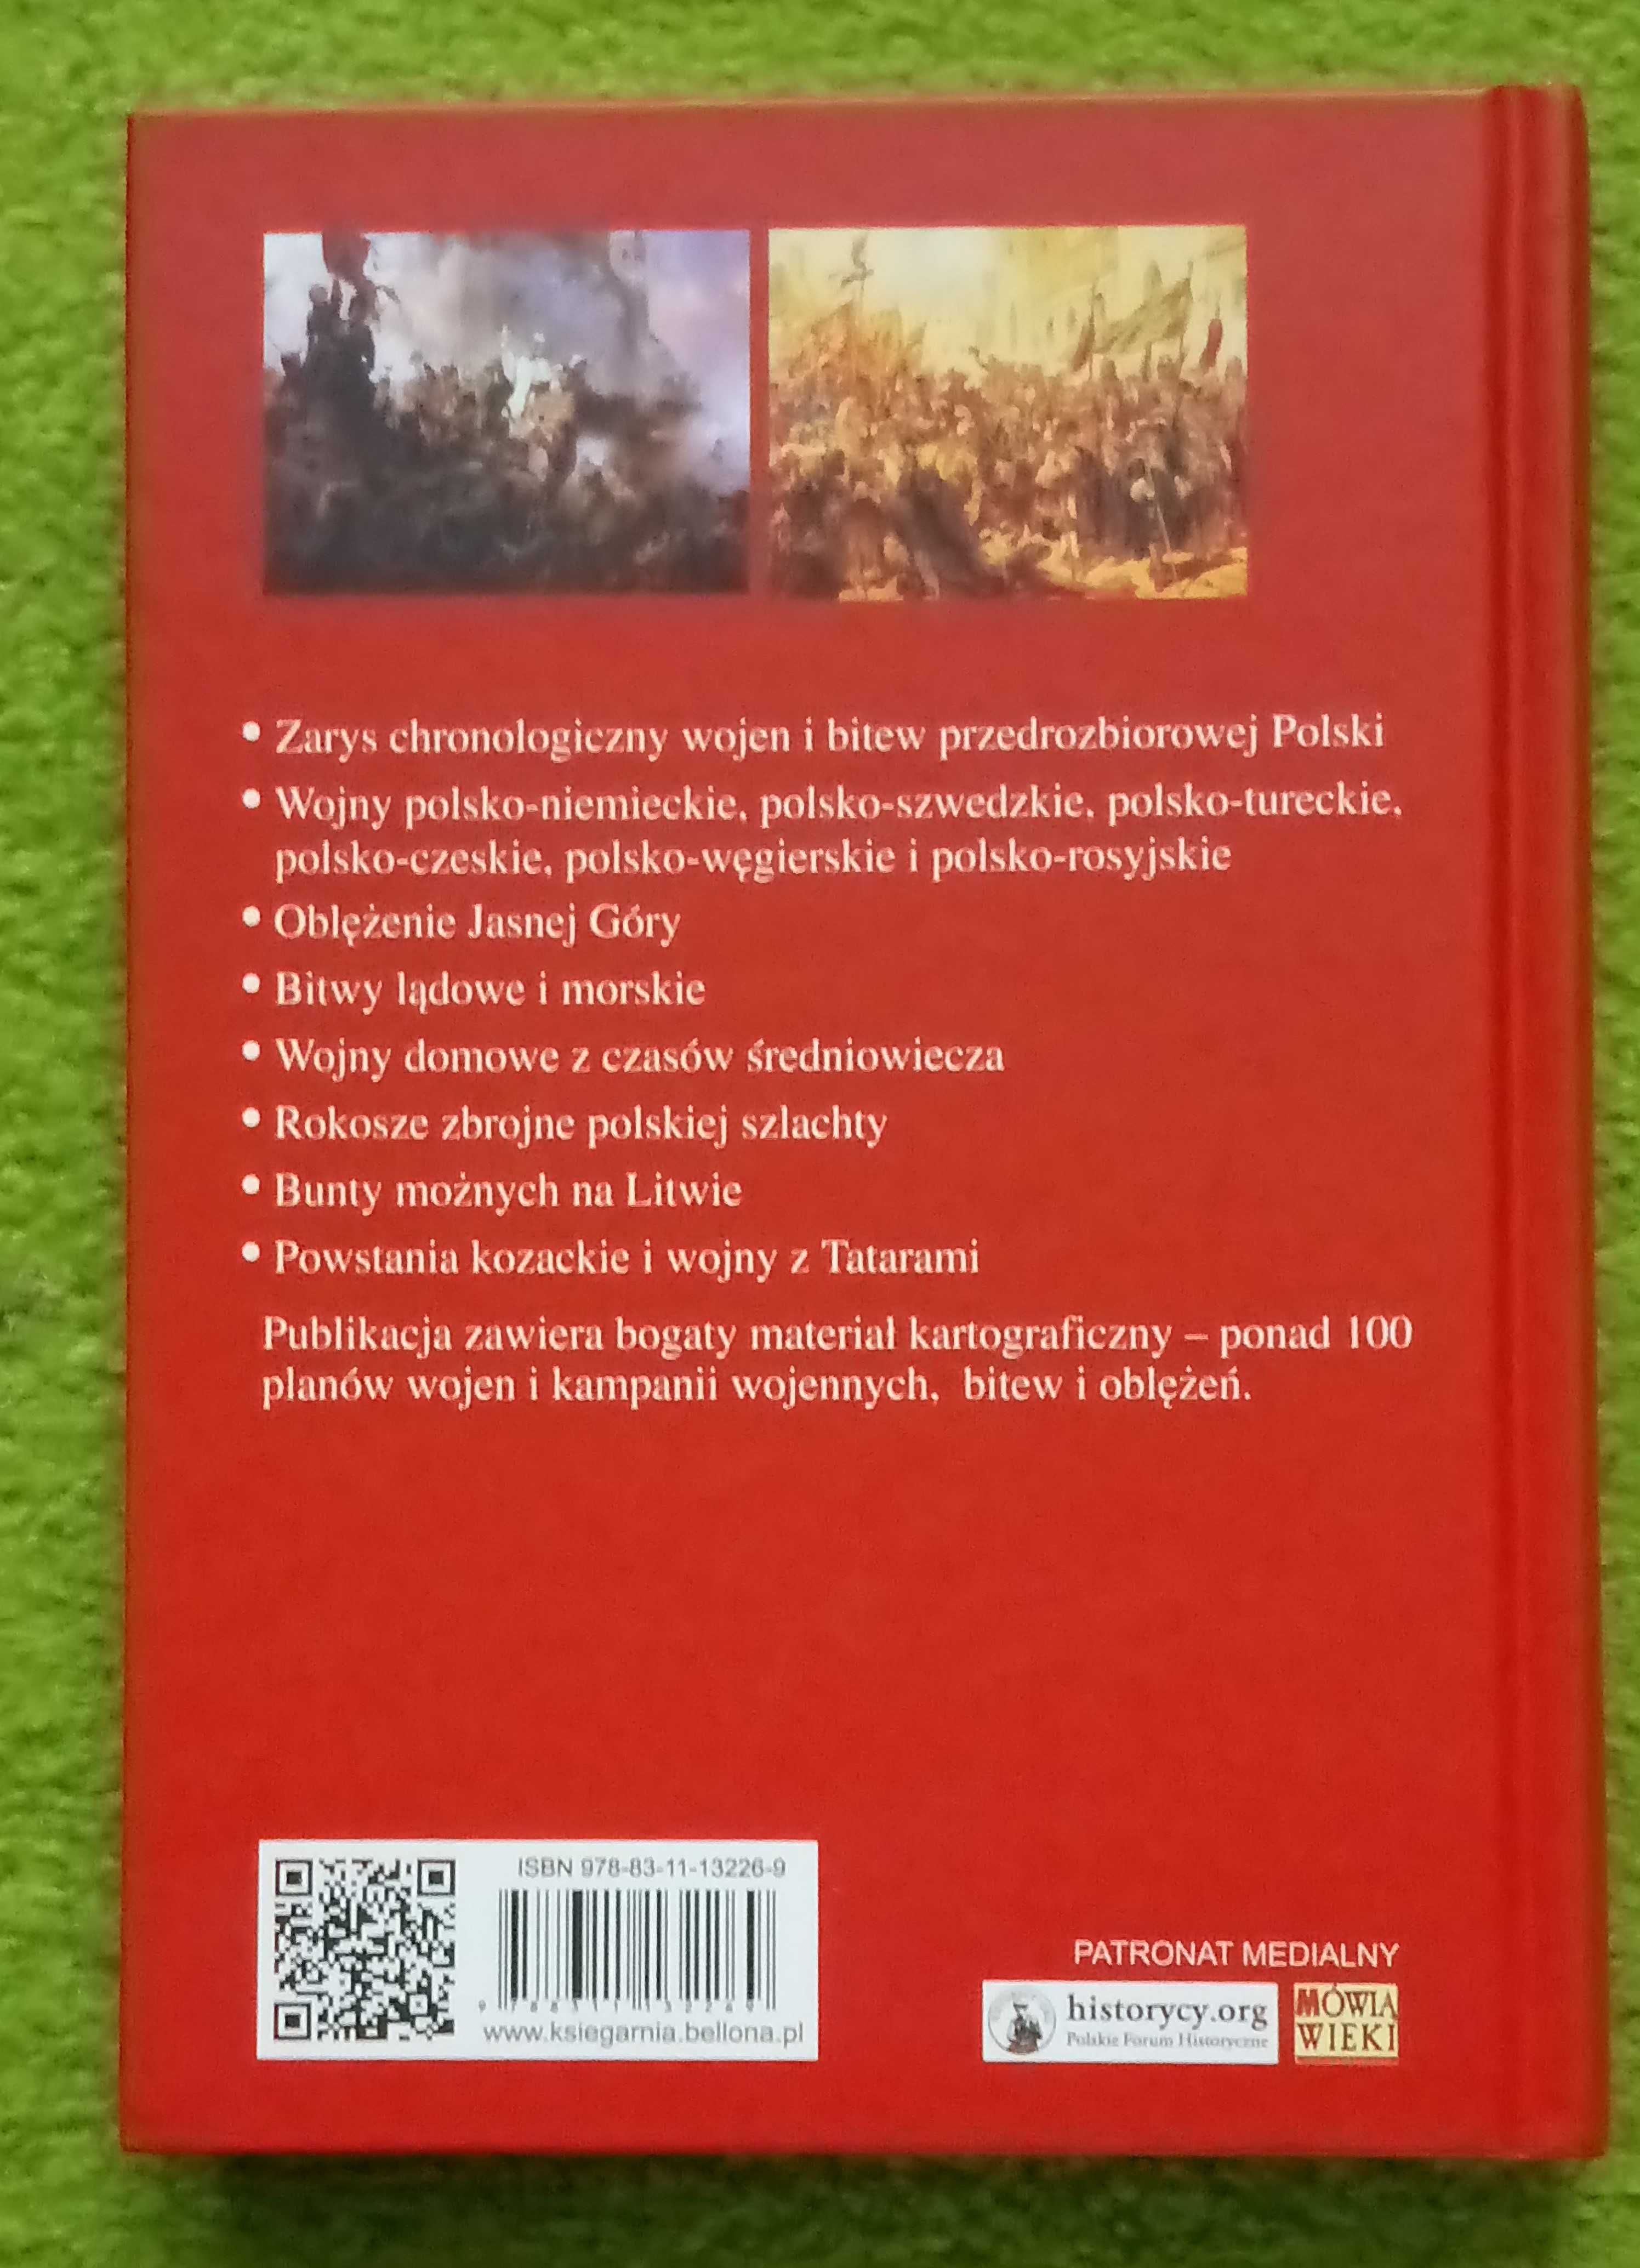 Ilustrowana historia wojen i bitew polskich